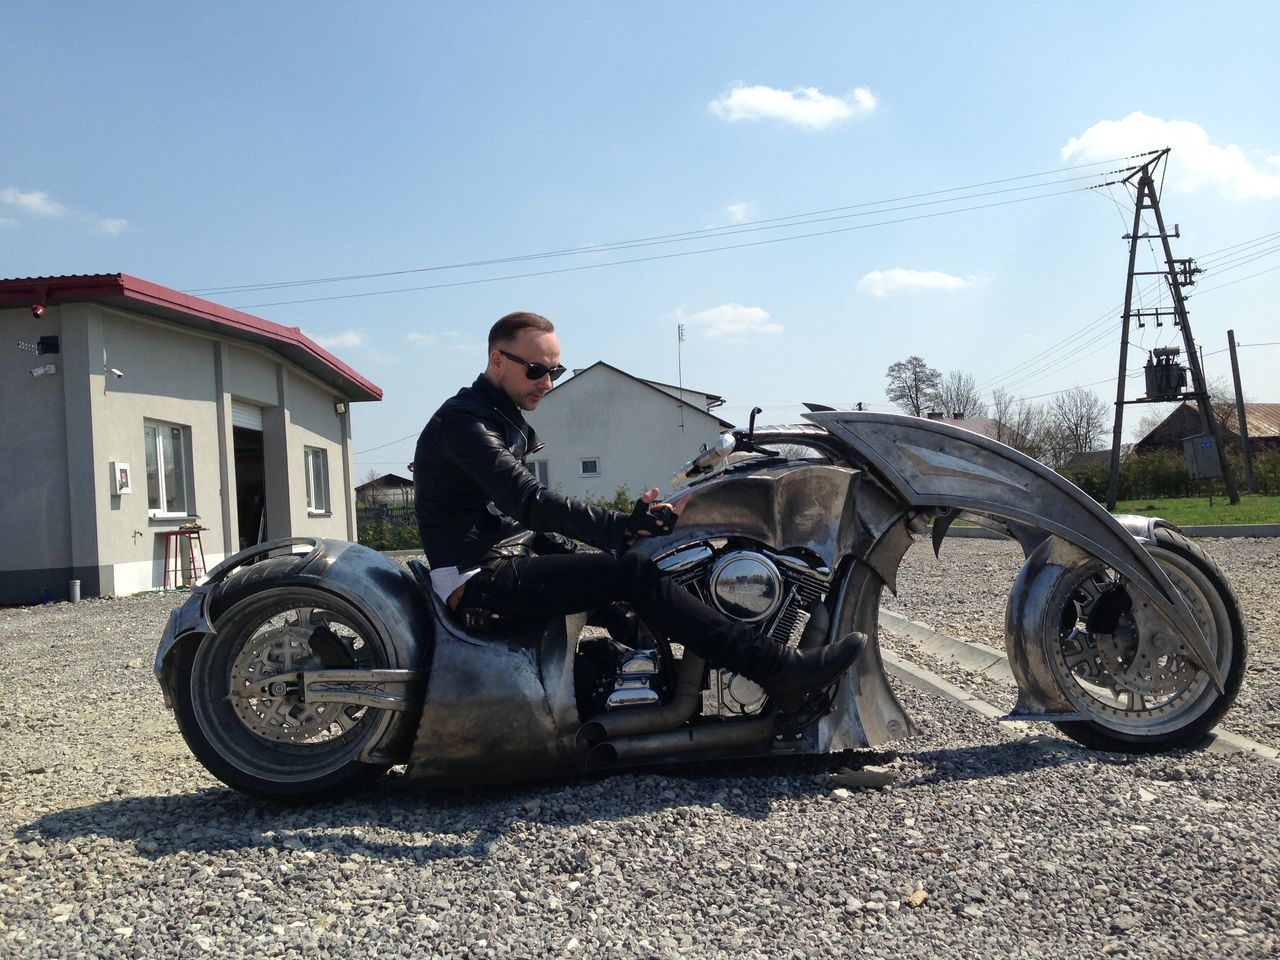 Motocykl Nergala na sprzedaż. Cena to okrągły milion złotych